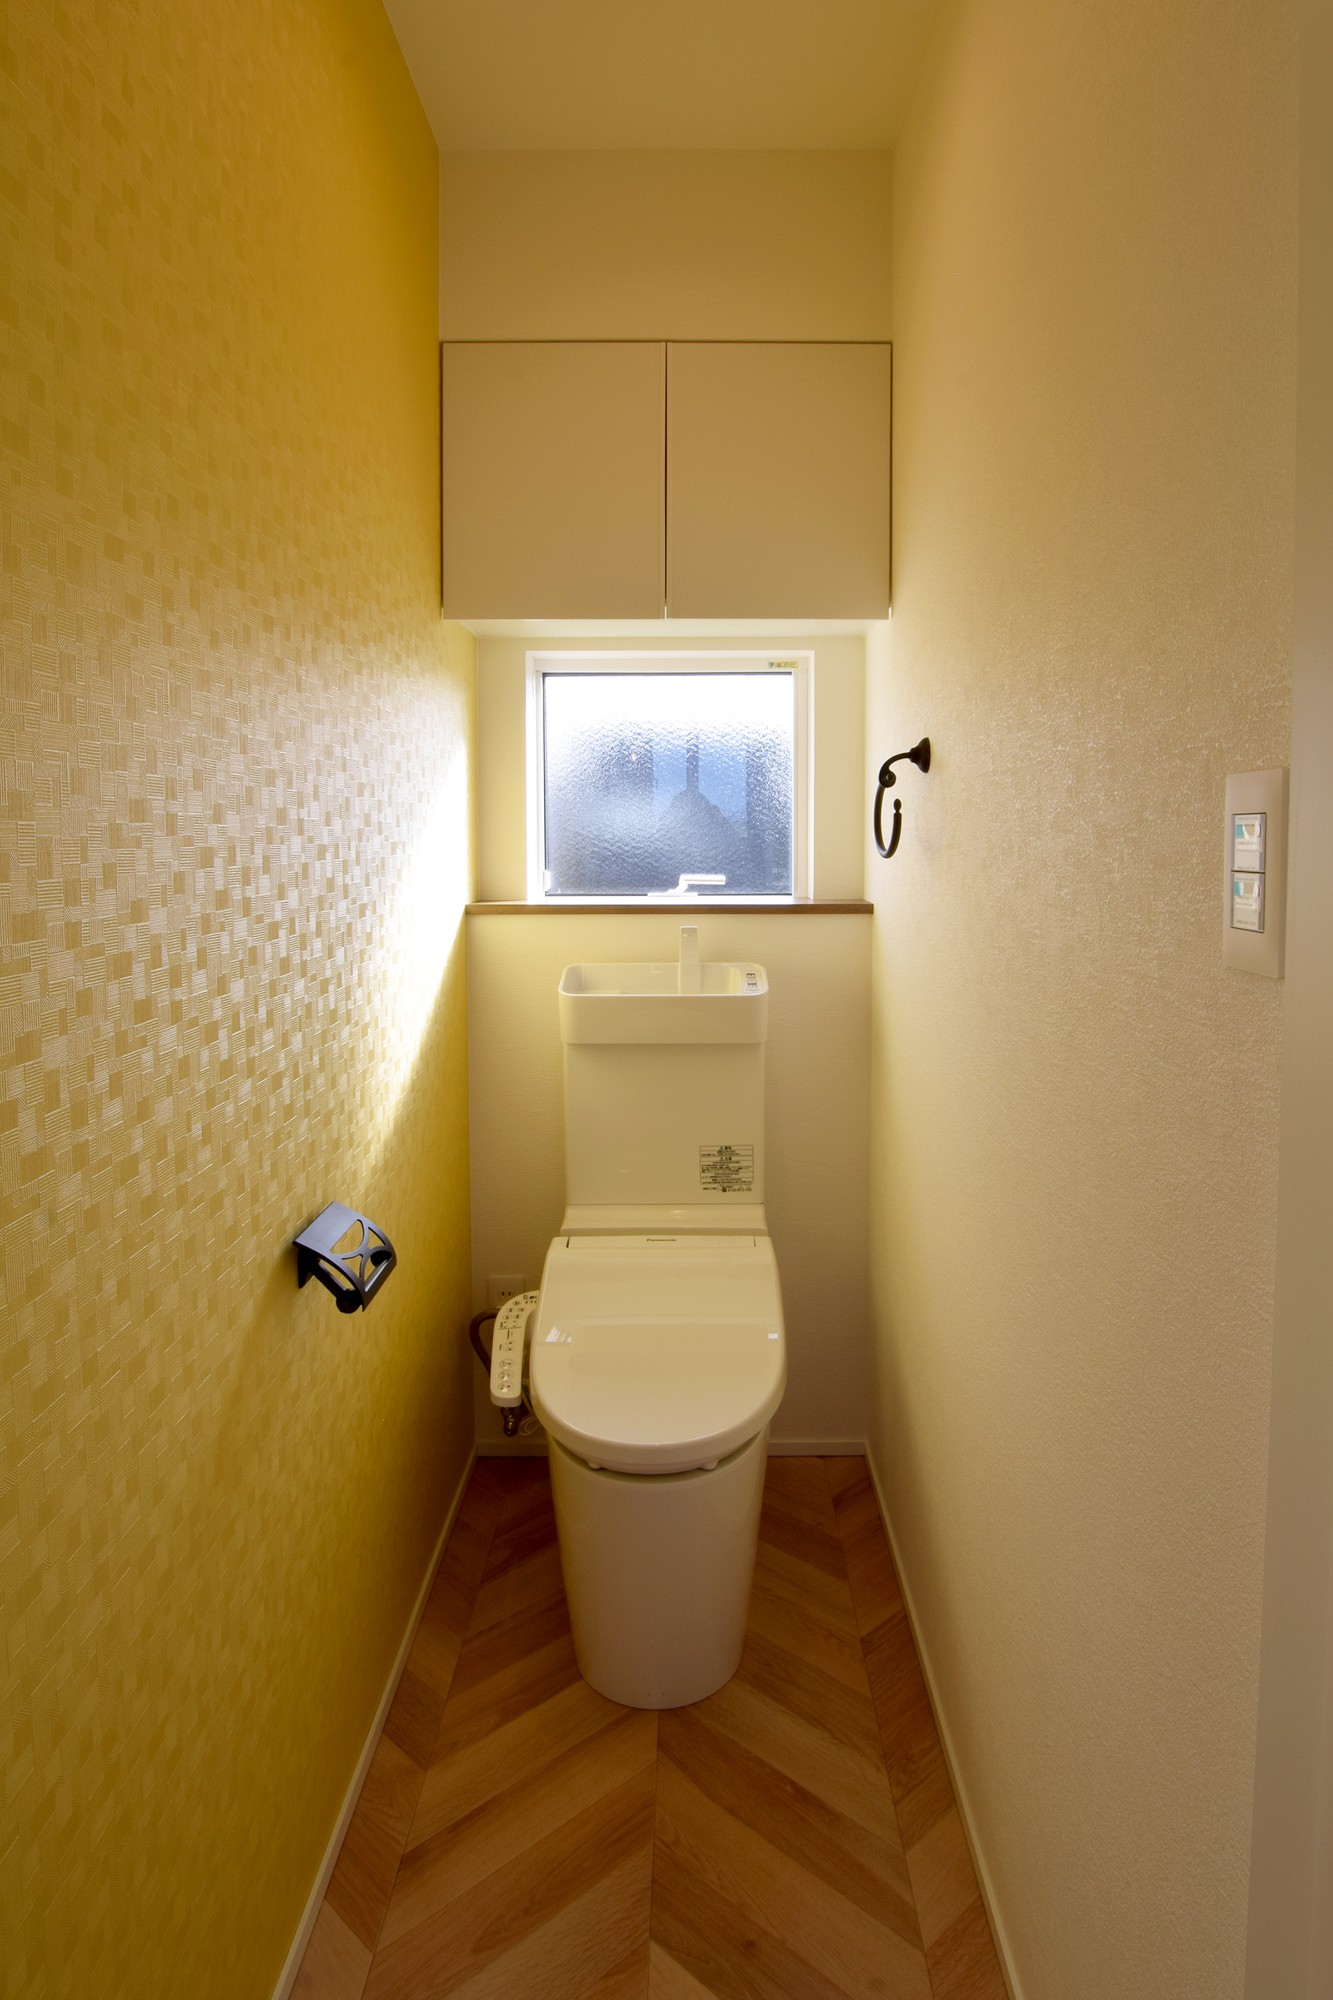 ヘリンボーン床が特徴的な２Fのトイレ